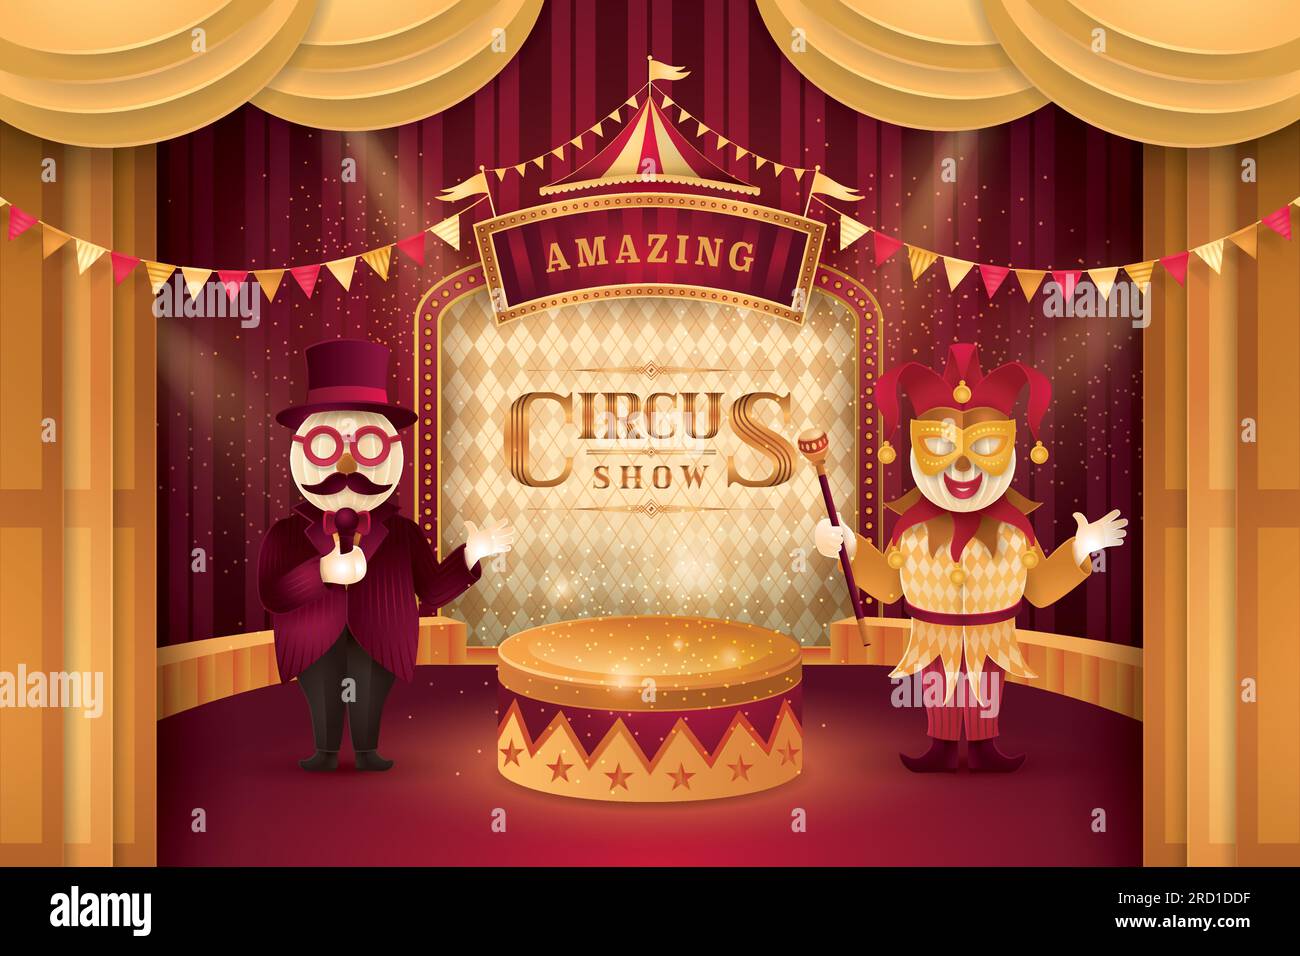 Espectáculo de circo increíble, escenario de cortinas doradas con marco de circo Bordor, Barker de circo con sombrero, gafas y bigote, máscara de bufón veneciano, buntin triángulo Ilustración del Vector